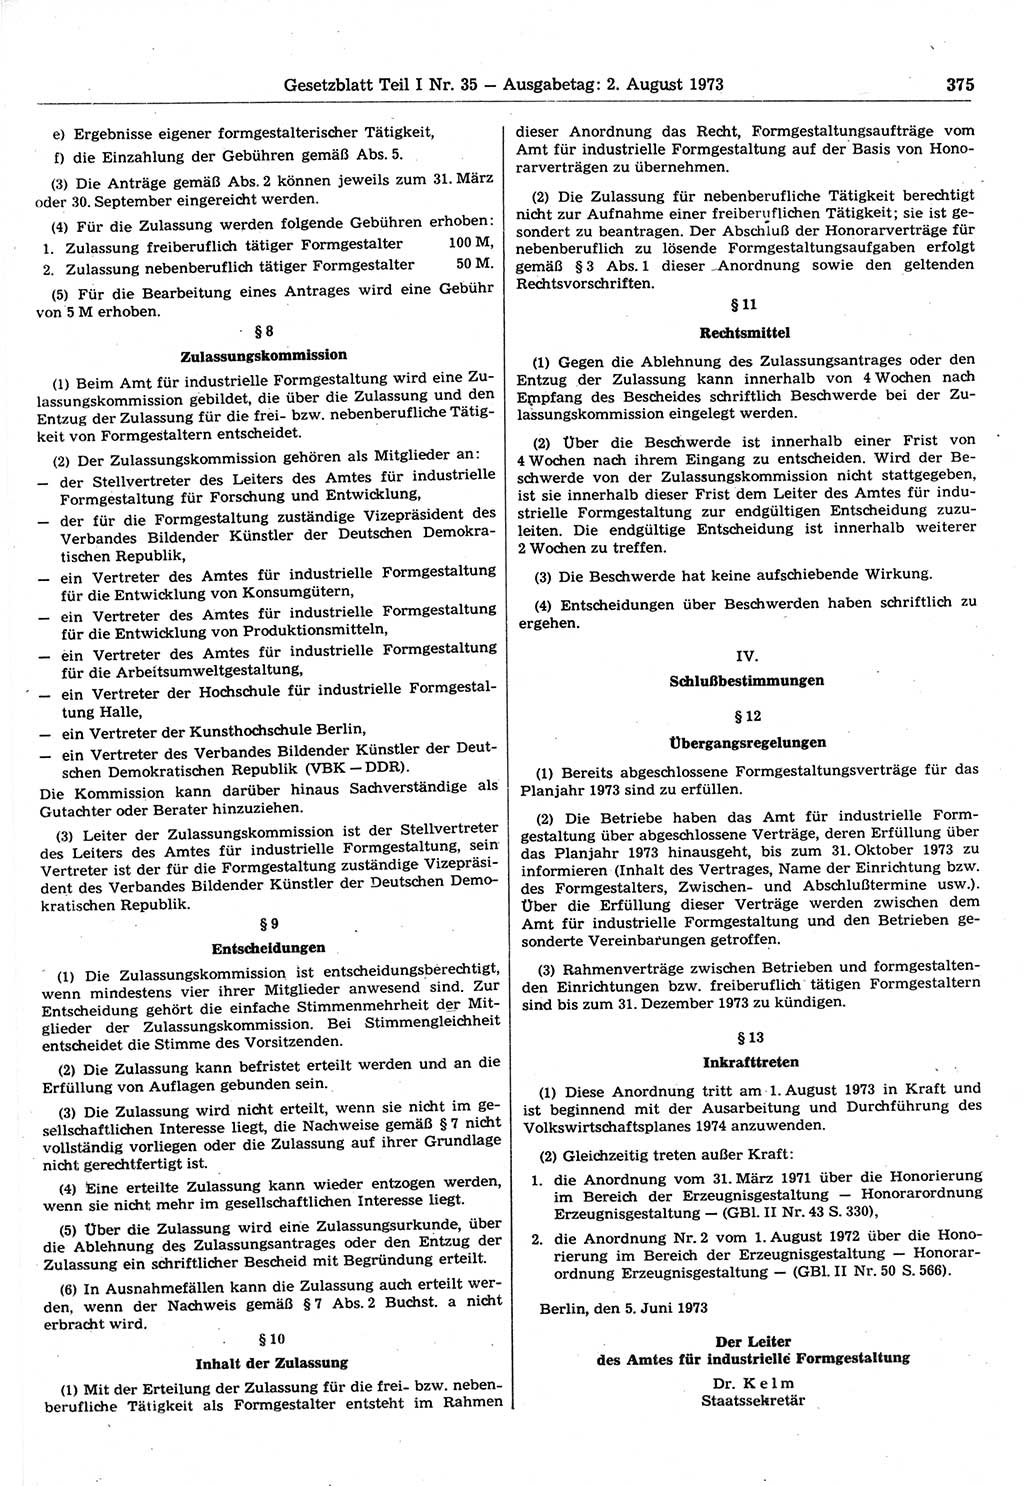 Gesetzblatt (GBl.) der Deutschen Demokratischen Republik (DDR) Teil Ⅰ 1973, Seite 375 (GBl. DDR Ⅰ 1973, S. 375)